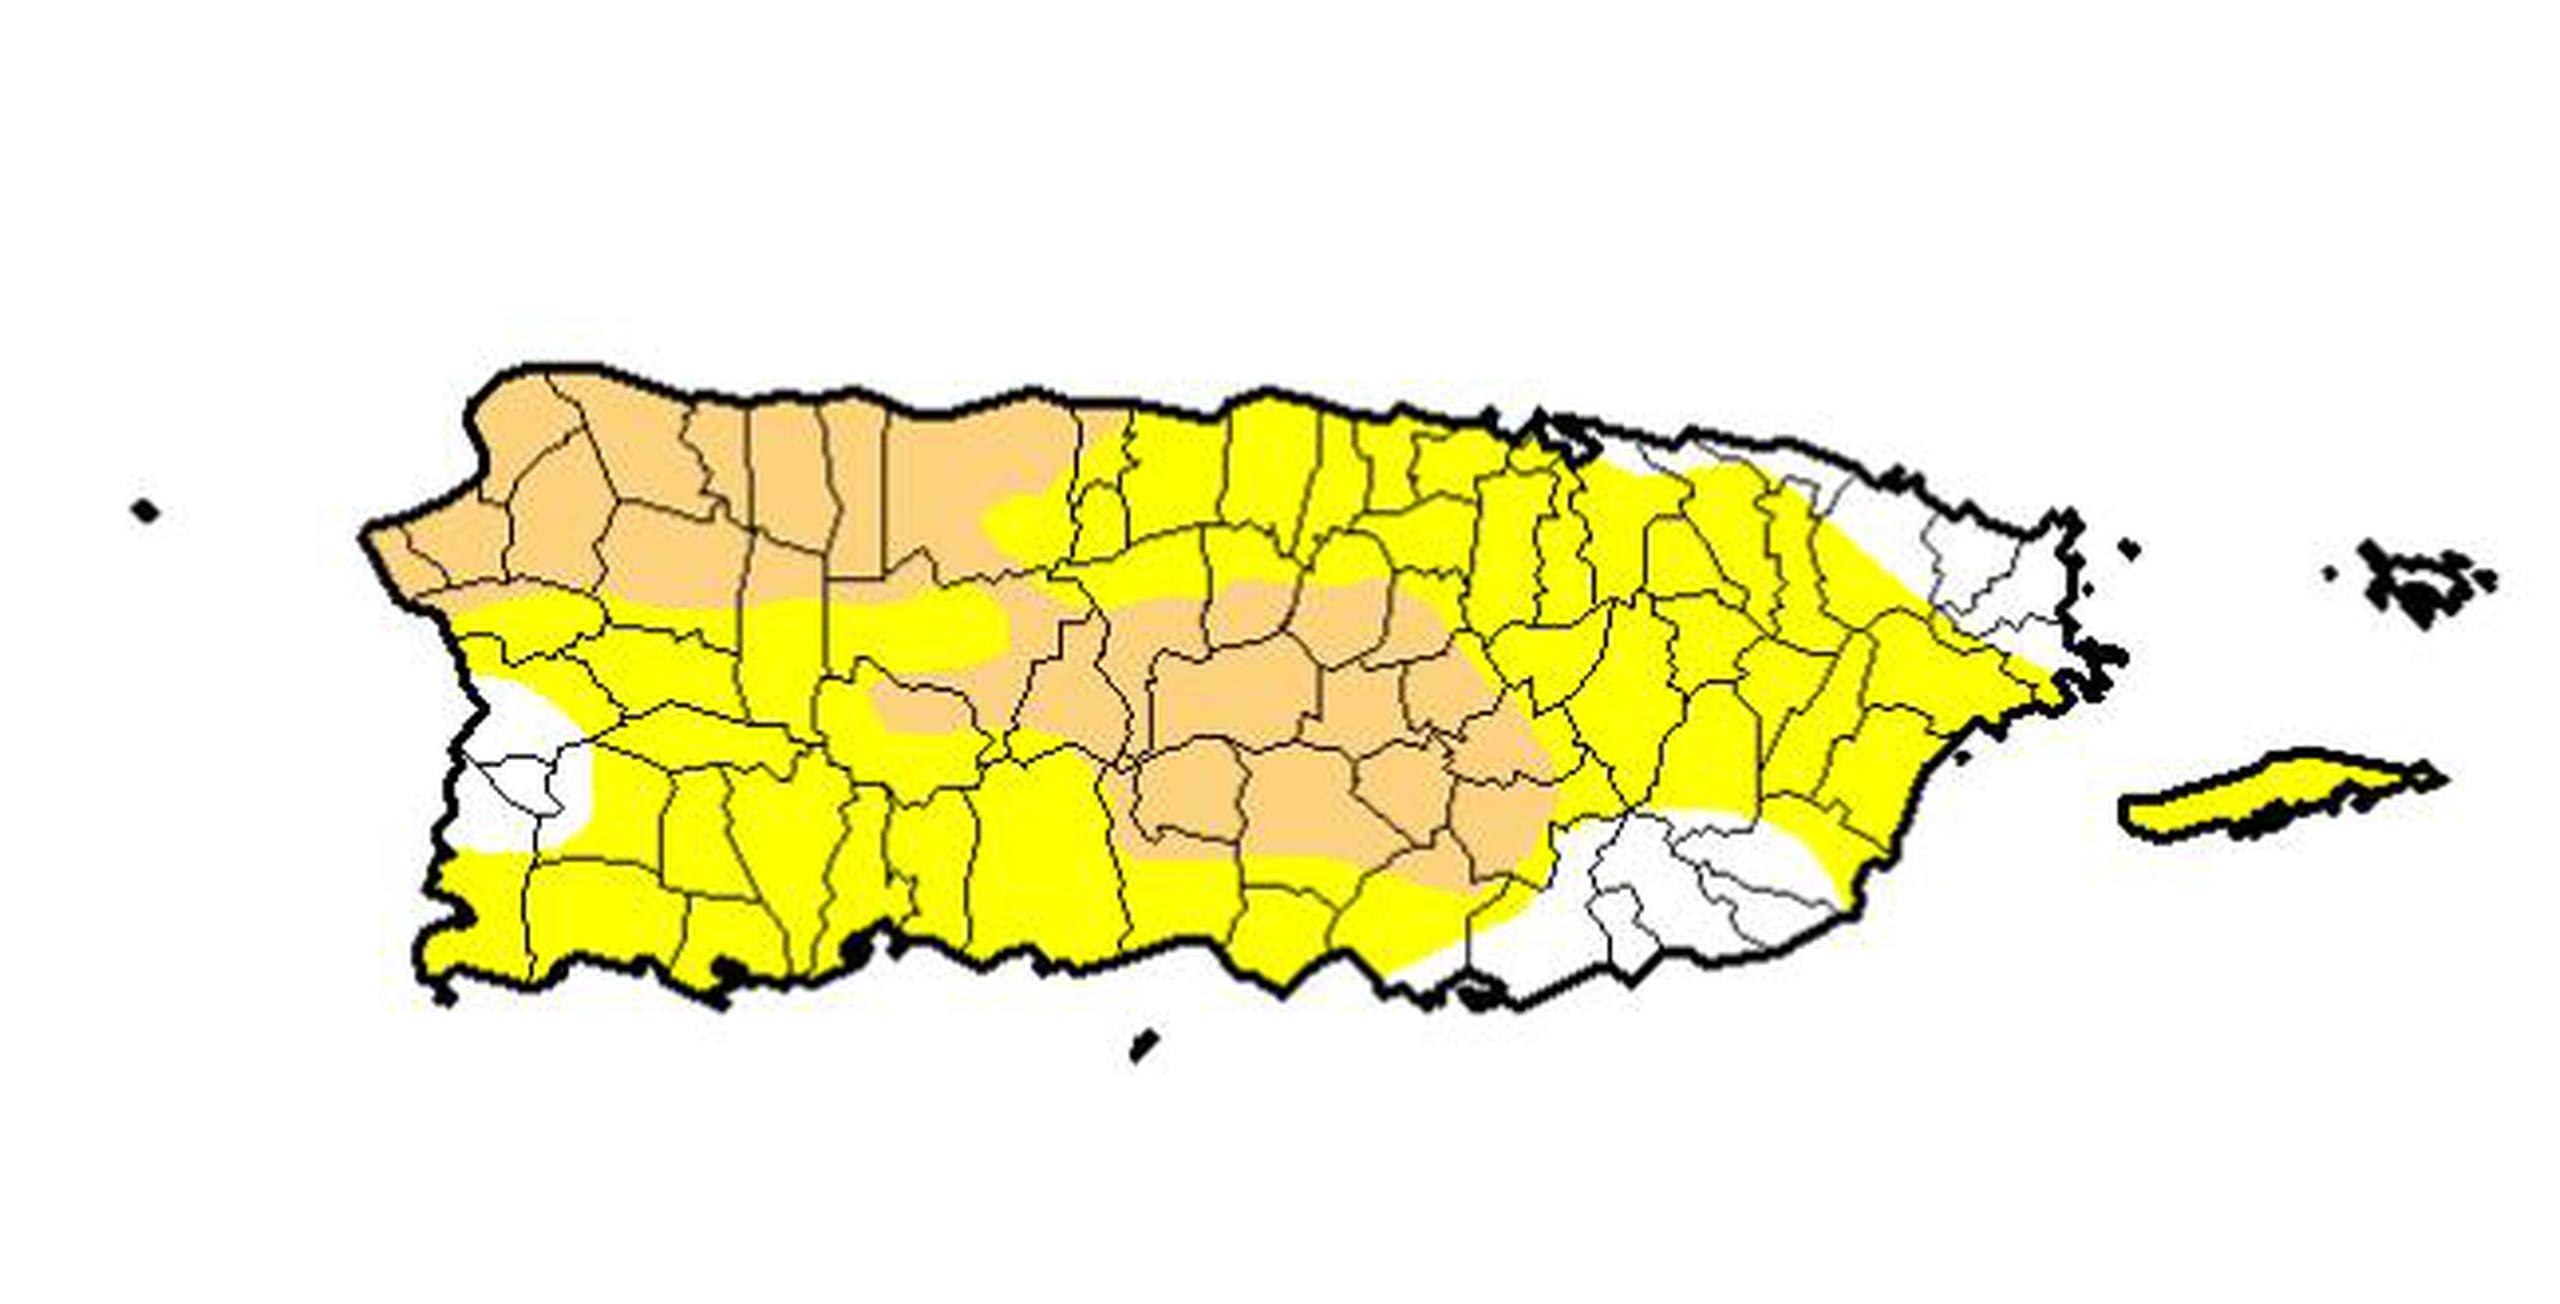 Los pueblos en crema están bajo sequía moderada y los amarillos están atípicamente secos. (Captura / Monitor de Sequía) 